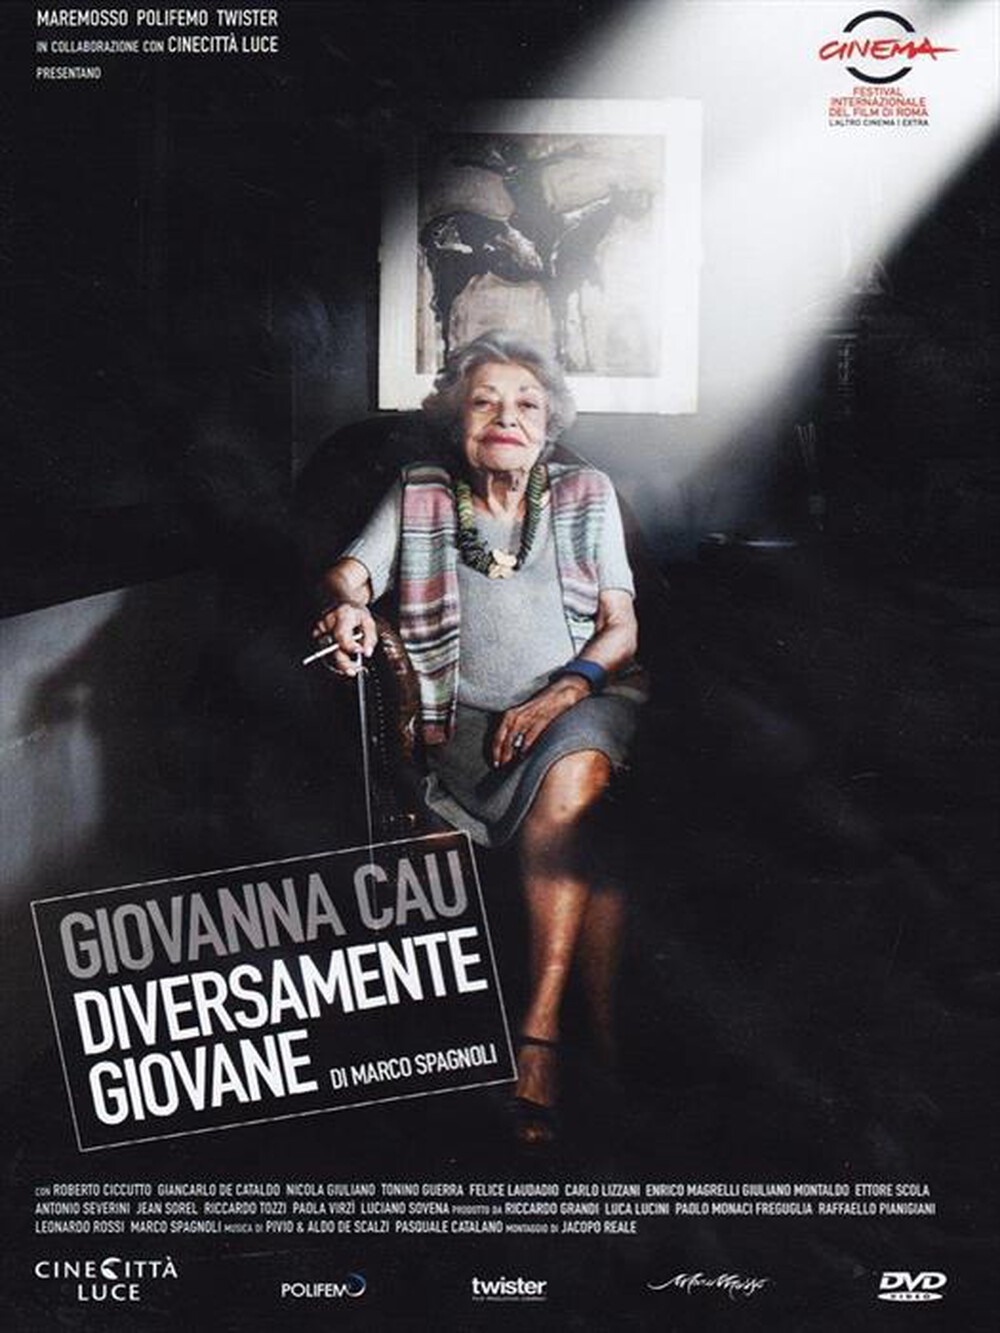 "ISTITUTO LUCE - Giovanna Cau - Diversamente Giovane"